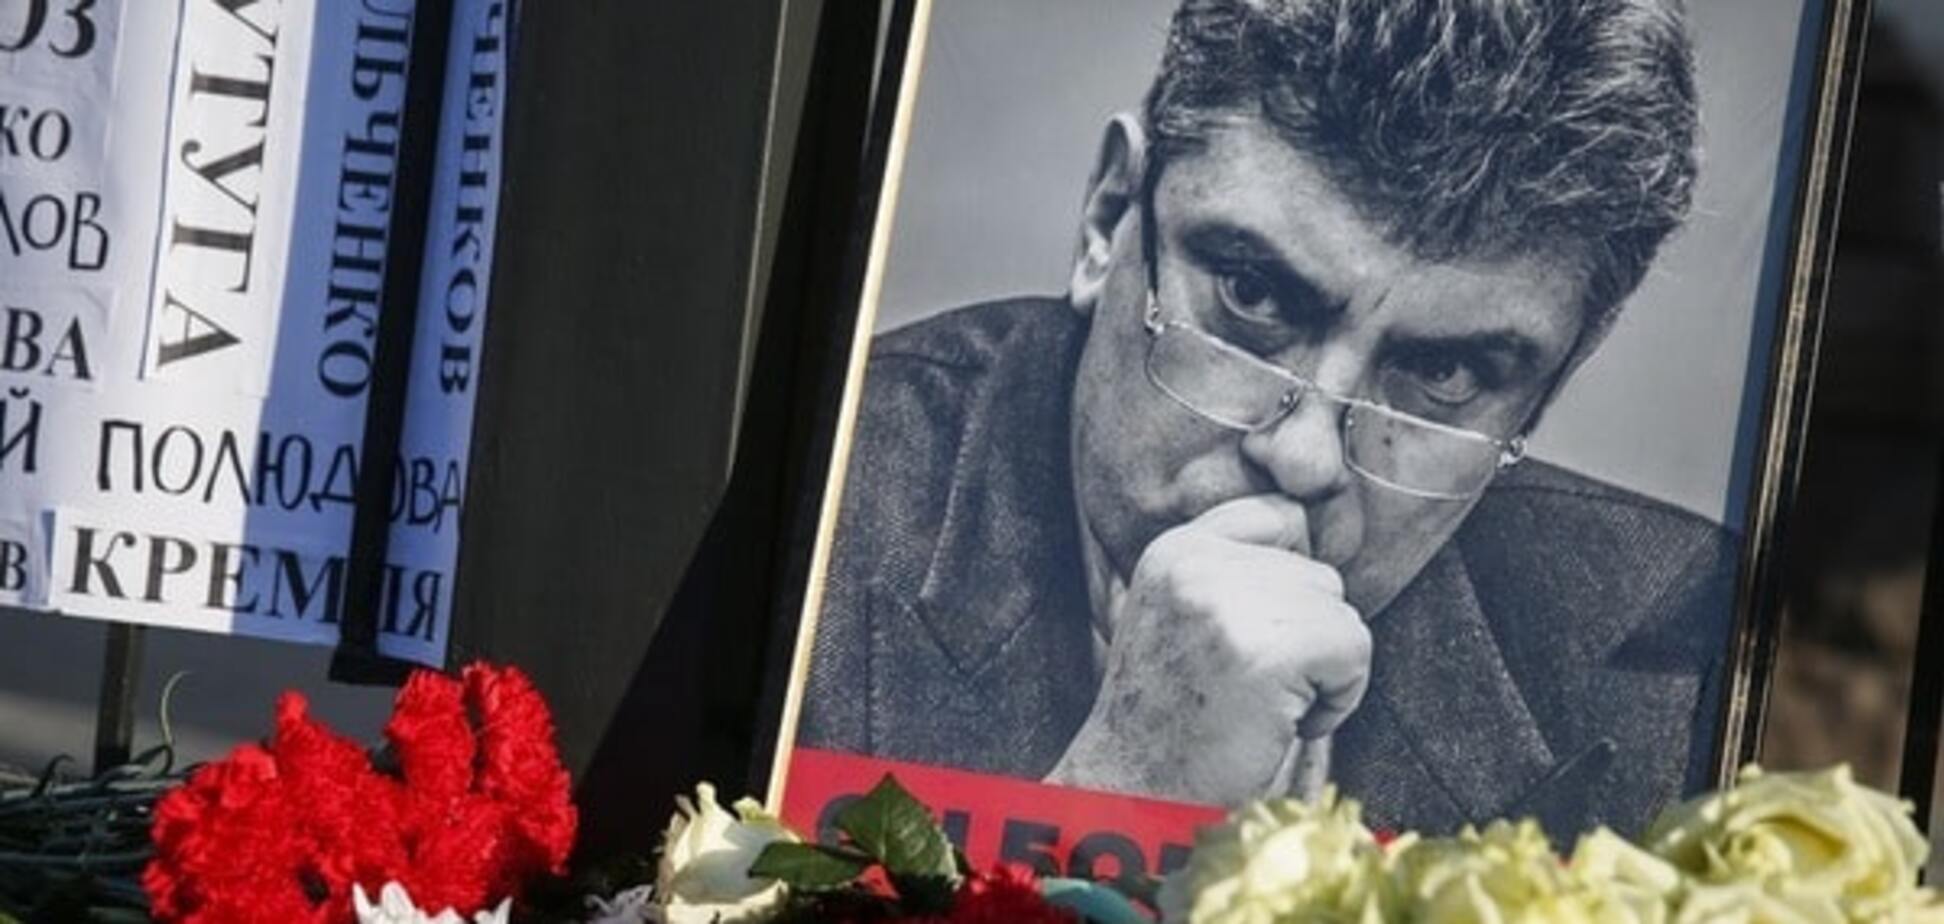 Найти и наказать: послы стран ЕС призвали привлечь к ответственности убийц Немцова